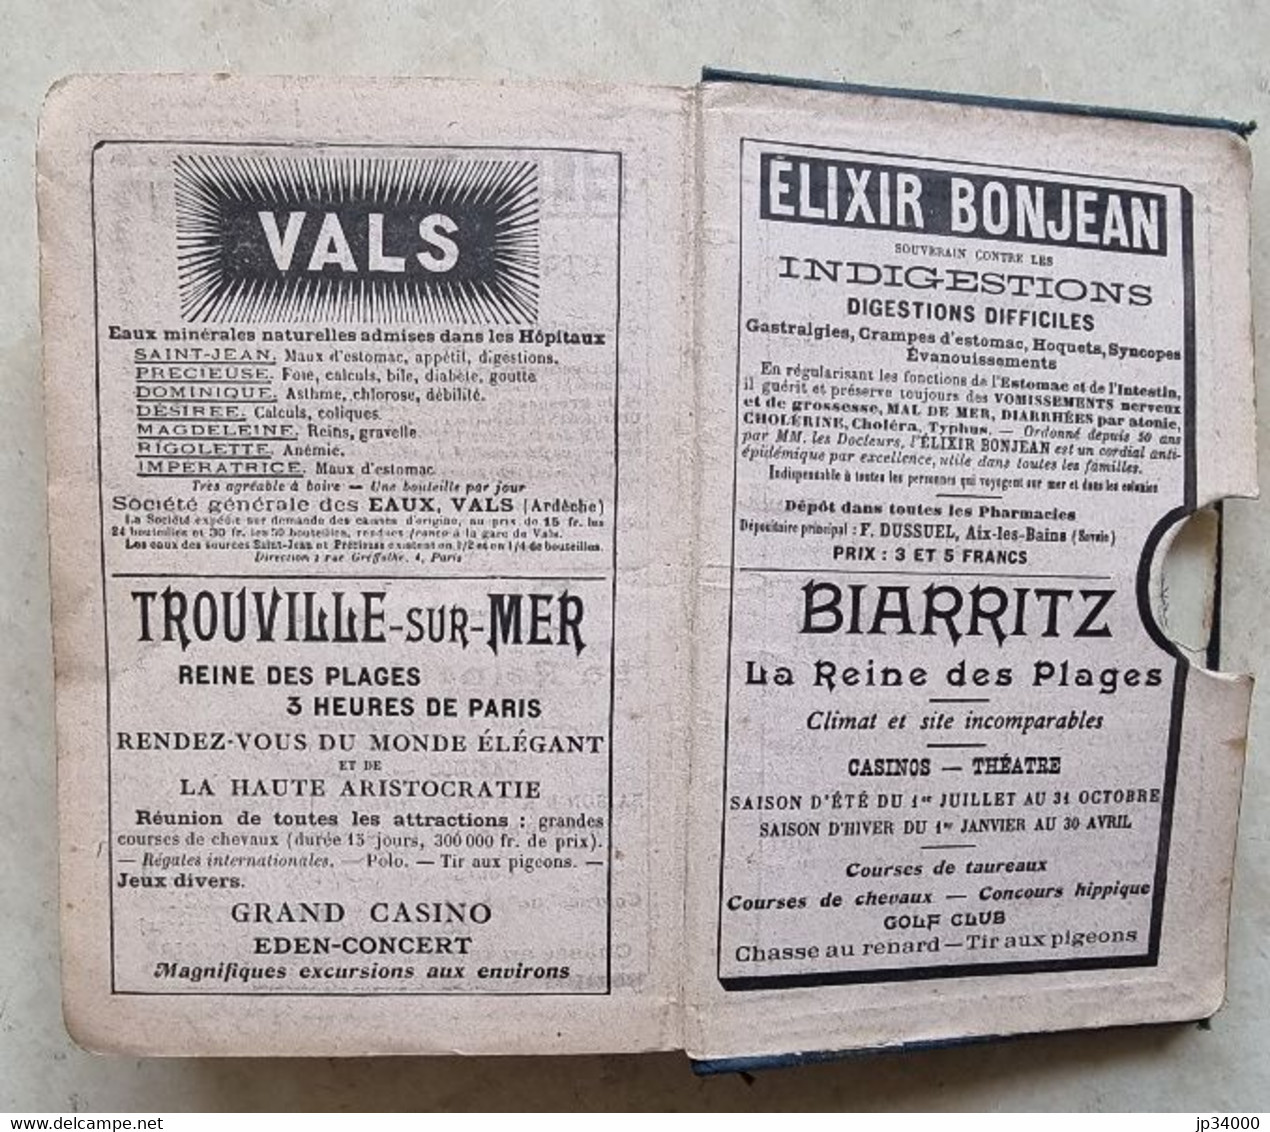 Guide JOANNE: Auvergne et centre. 12 cartes, 16 plans. publicités vintages 1906